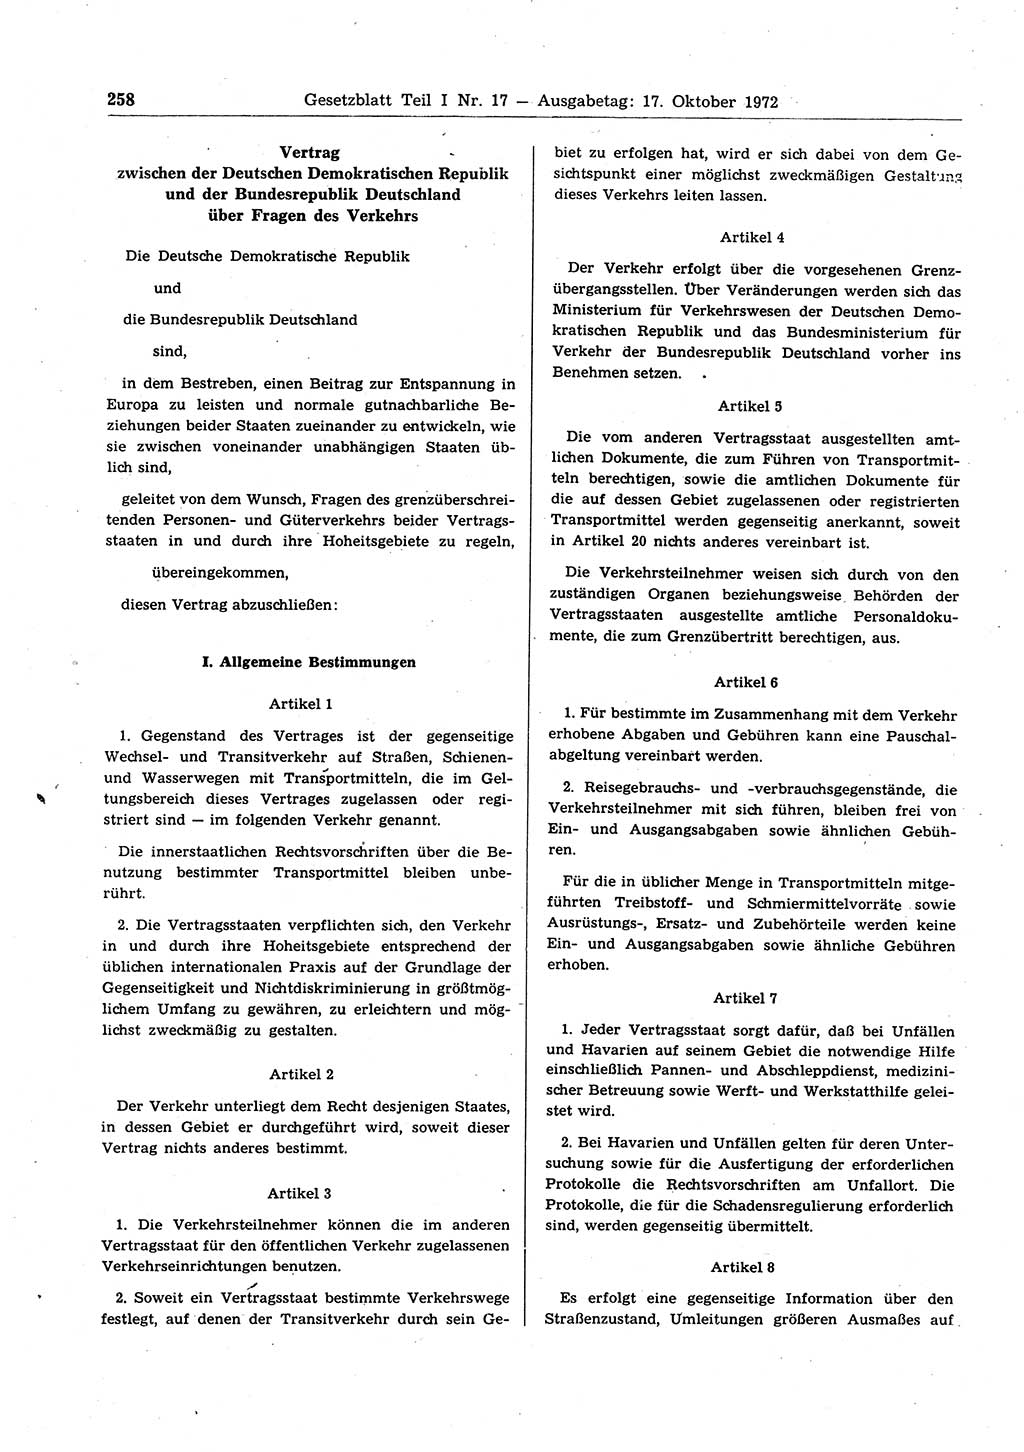 Gesetzblatt (GBl.) der Deutschen Demokratischen Republik (DDR) Teil Ⅰ 1972, Seite 258 (GBl. DDR Ⅰ 1972, S. 258)